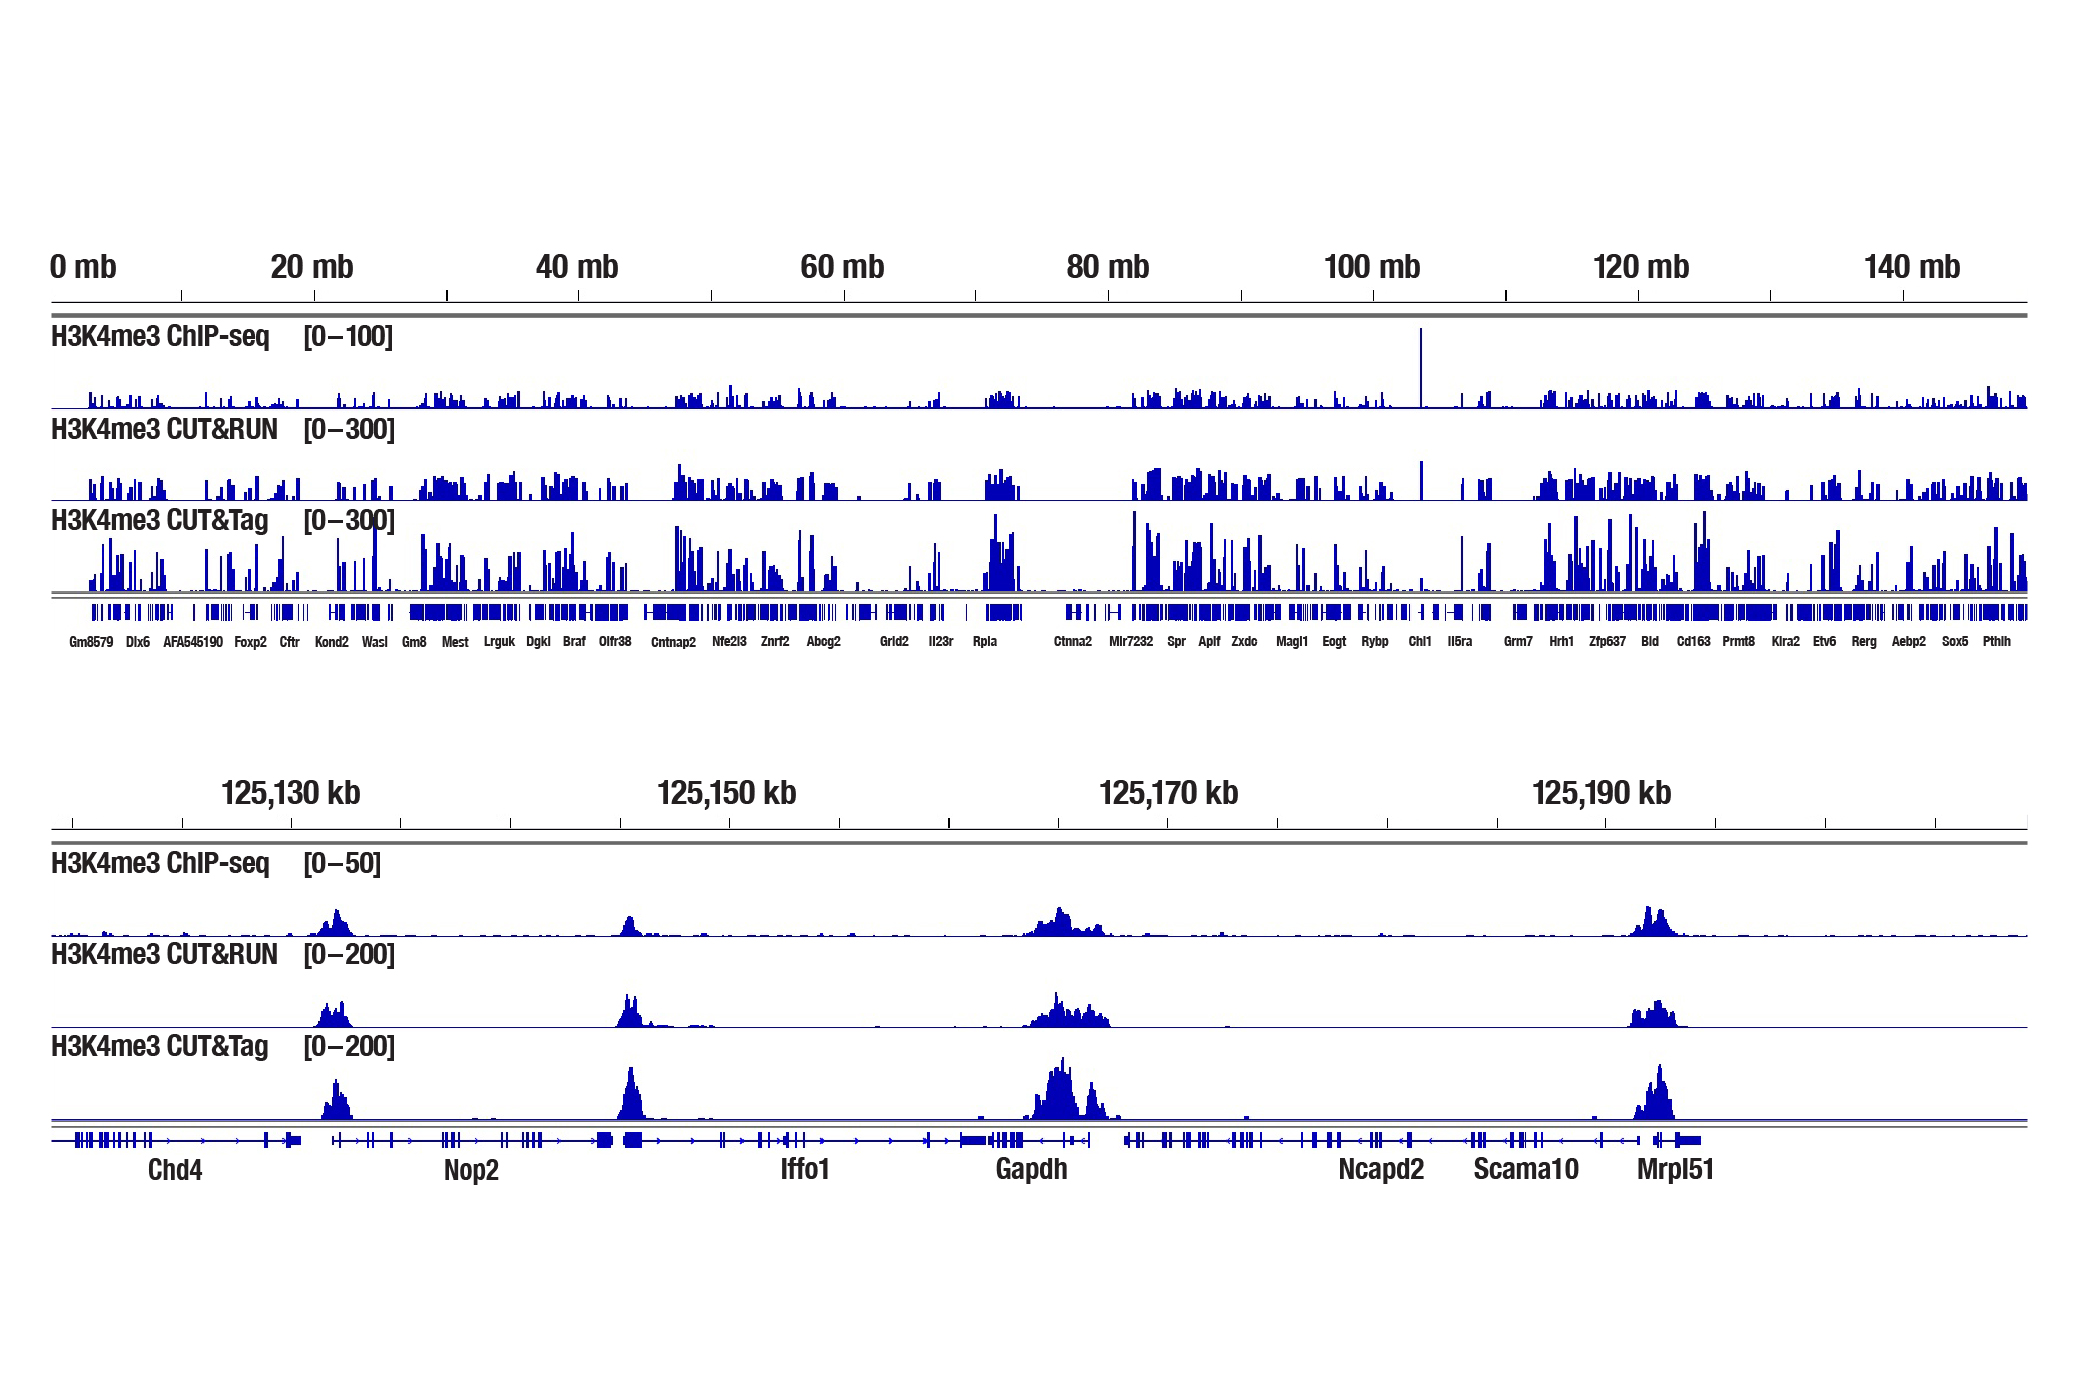 新鲜肝组织中组蛋白 PTM 的 ChIP-seq 对比 CUT&RUN 对比 CUT&Tag